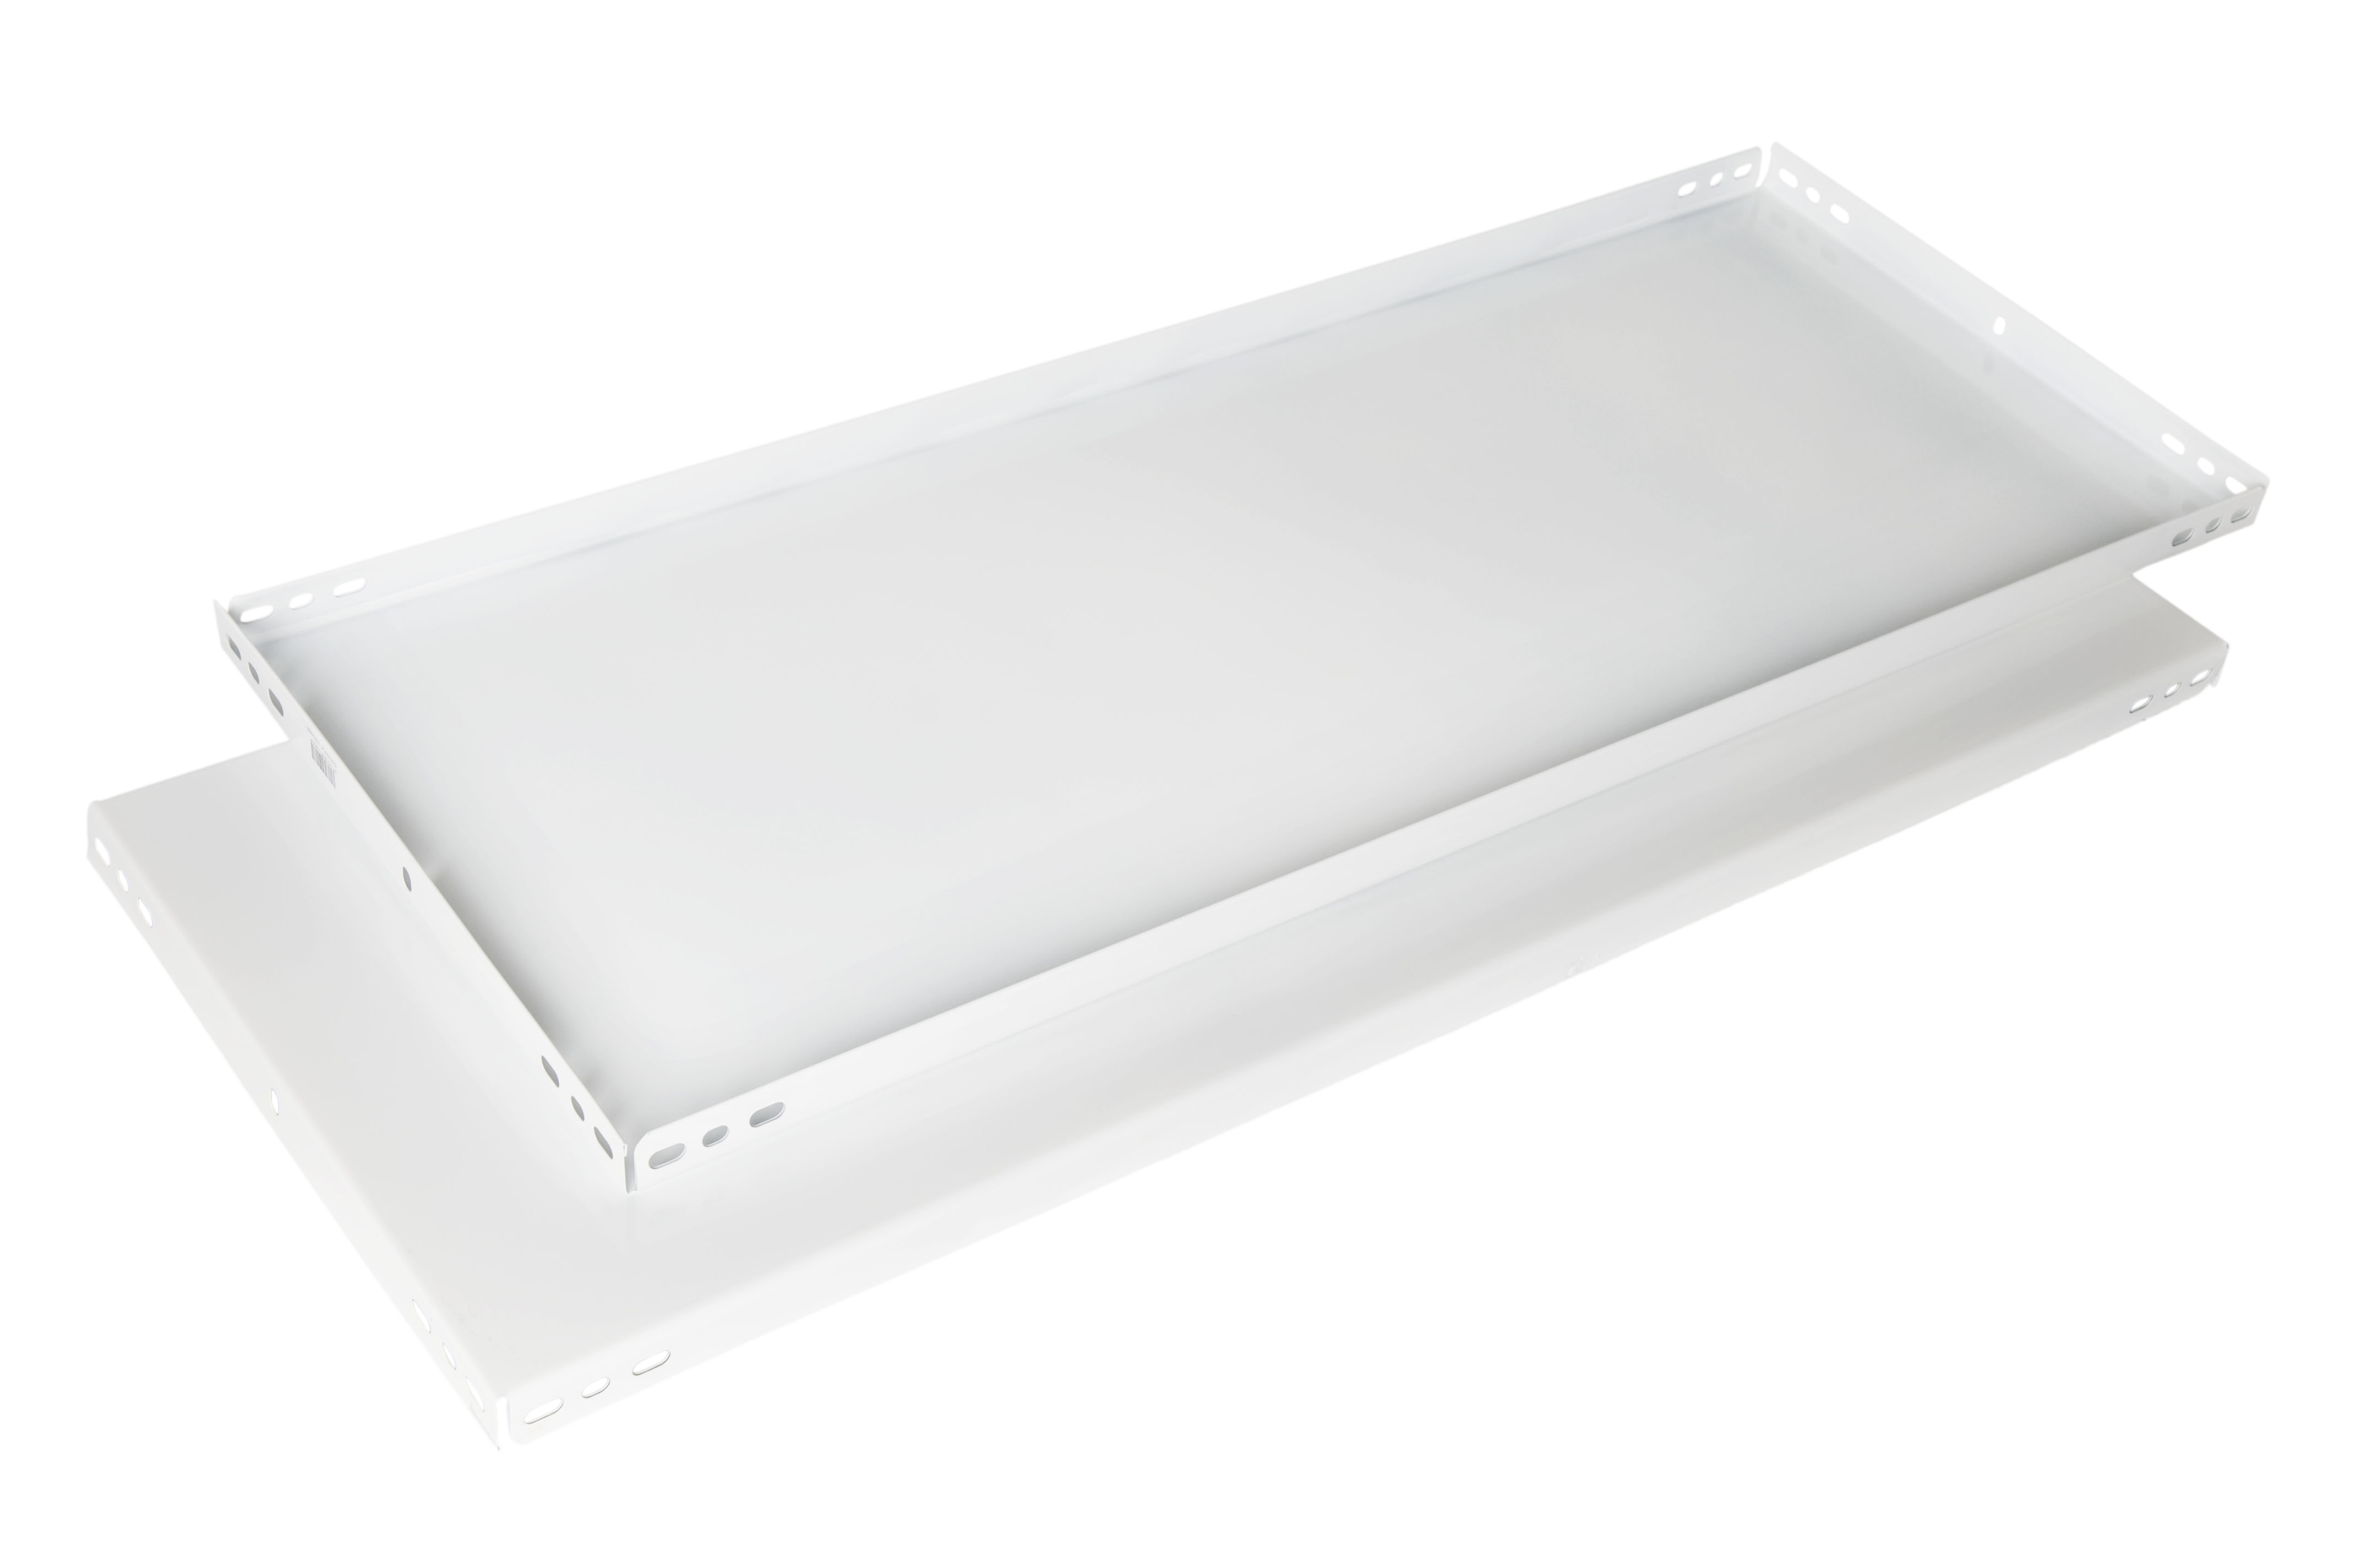 Balda recta para sistema de estantes de acero blanco de 90x40cm